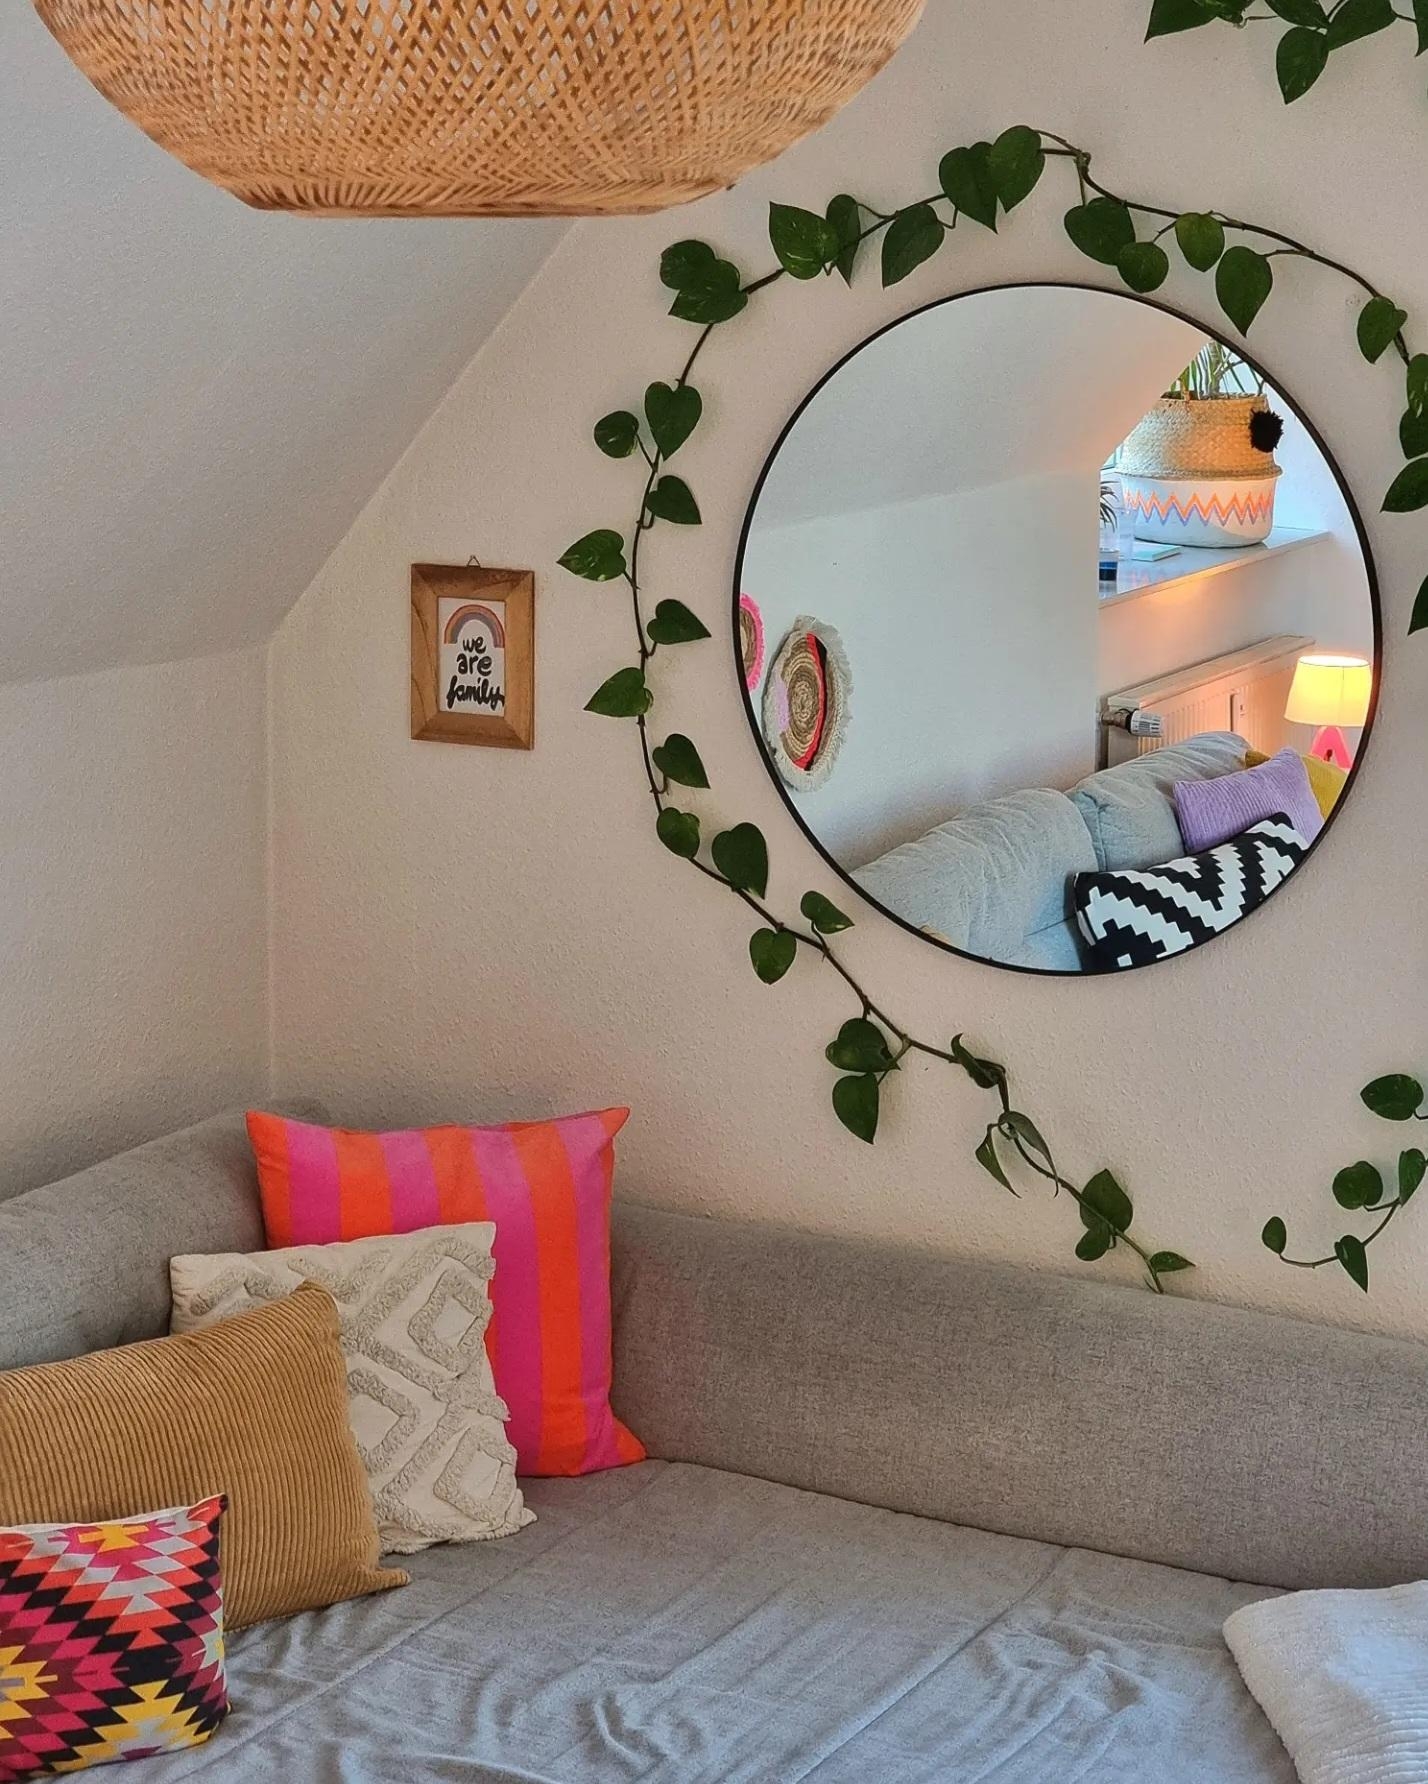 #Summerfeeling geht weiter 💛 #Wohnzimmer #Dachschräge #Livingroom #Bohostyle #Greenterior #Colorfulhome #couchliebt 